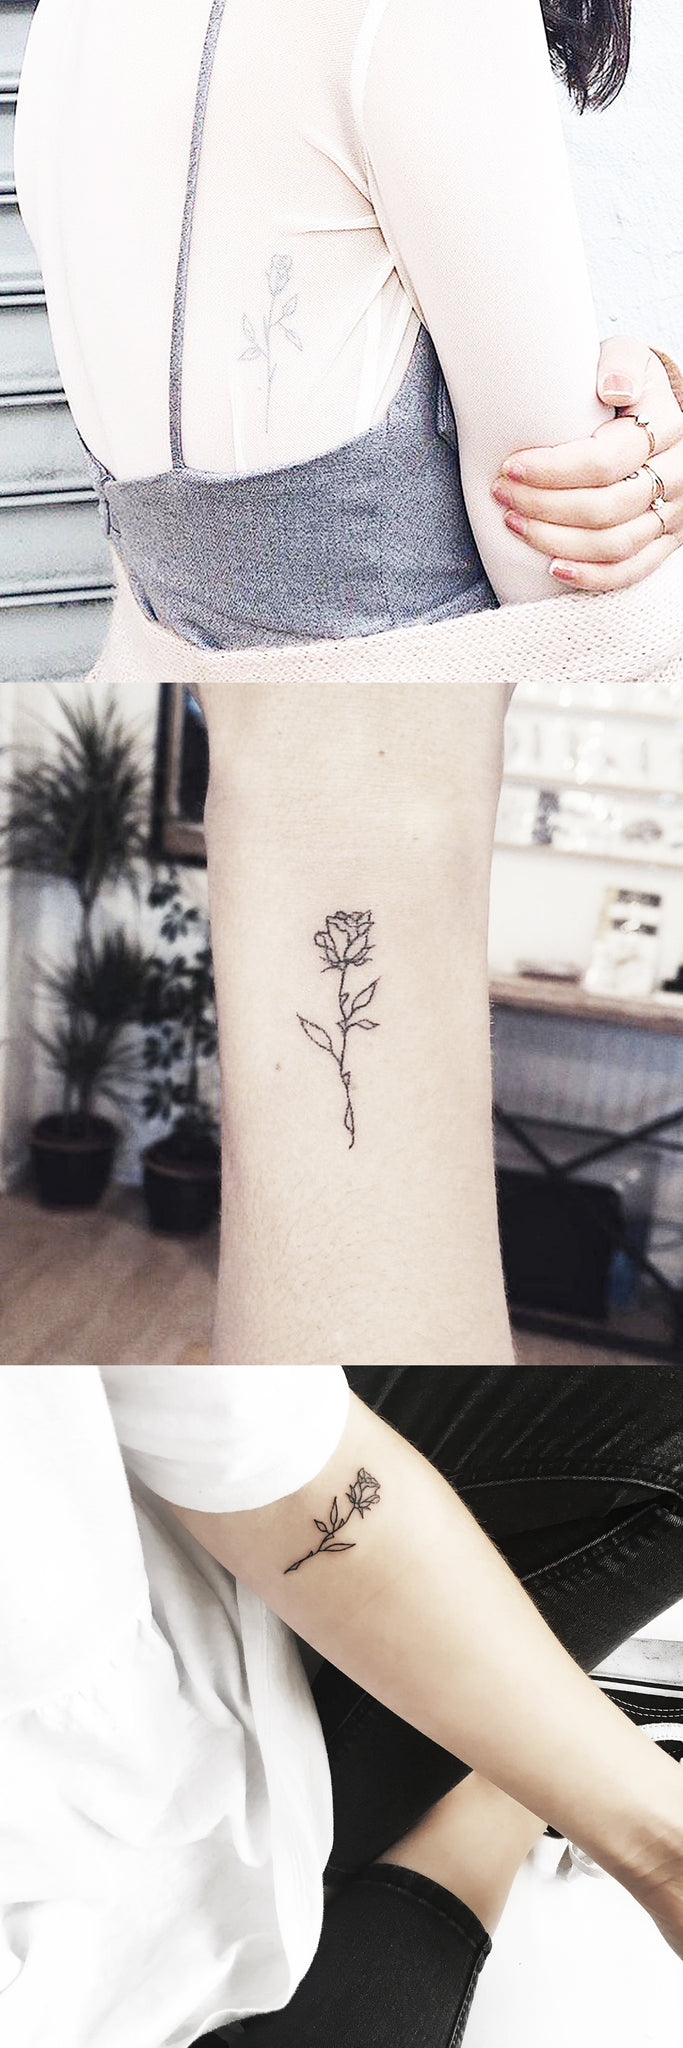 Small Cute Full Rose Wrist Tattoo Ideas - Simple Floral Rib Tatt - Minimal Forearm Flower Tat - MyBodiArt.com 